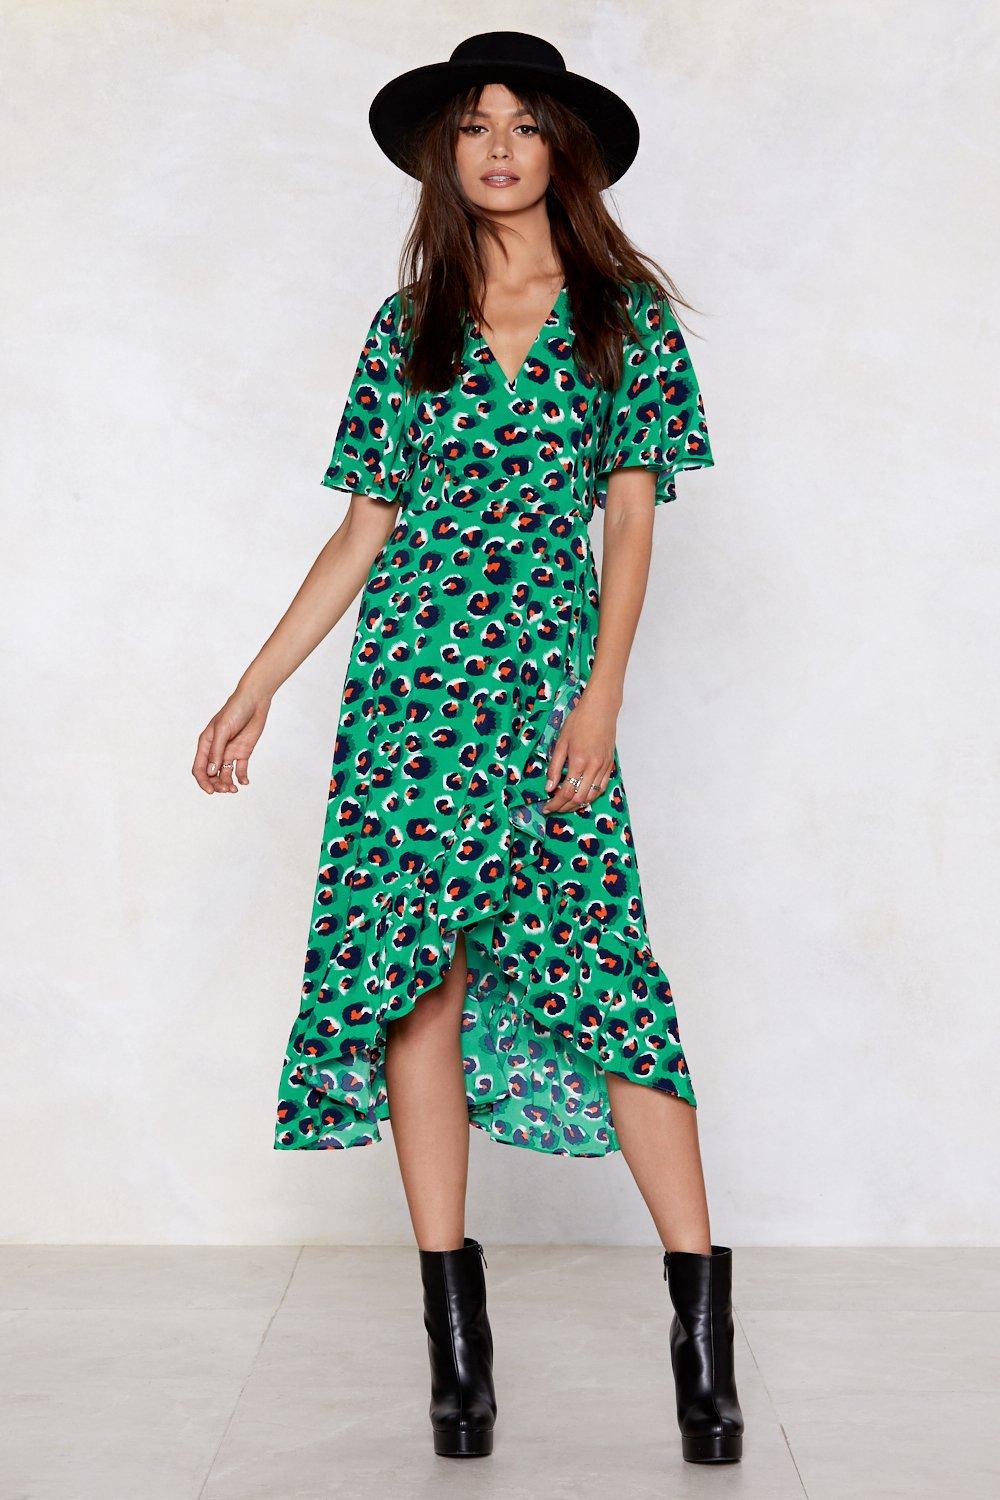 green leopard print dress